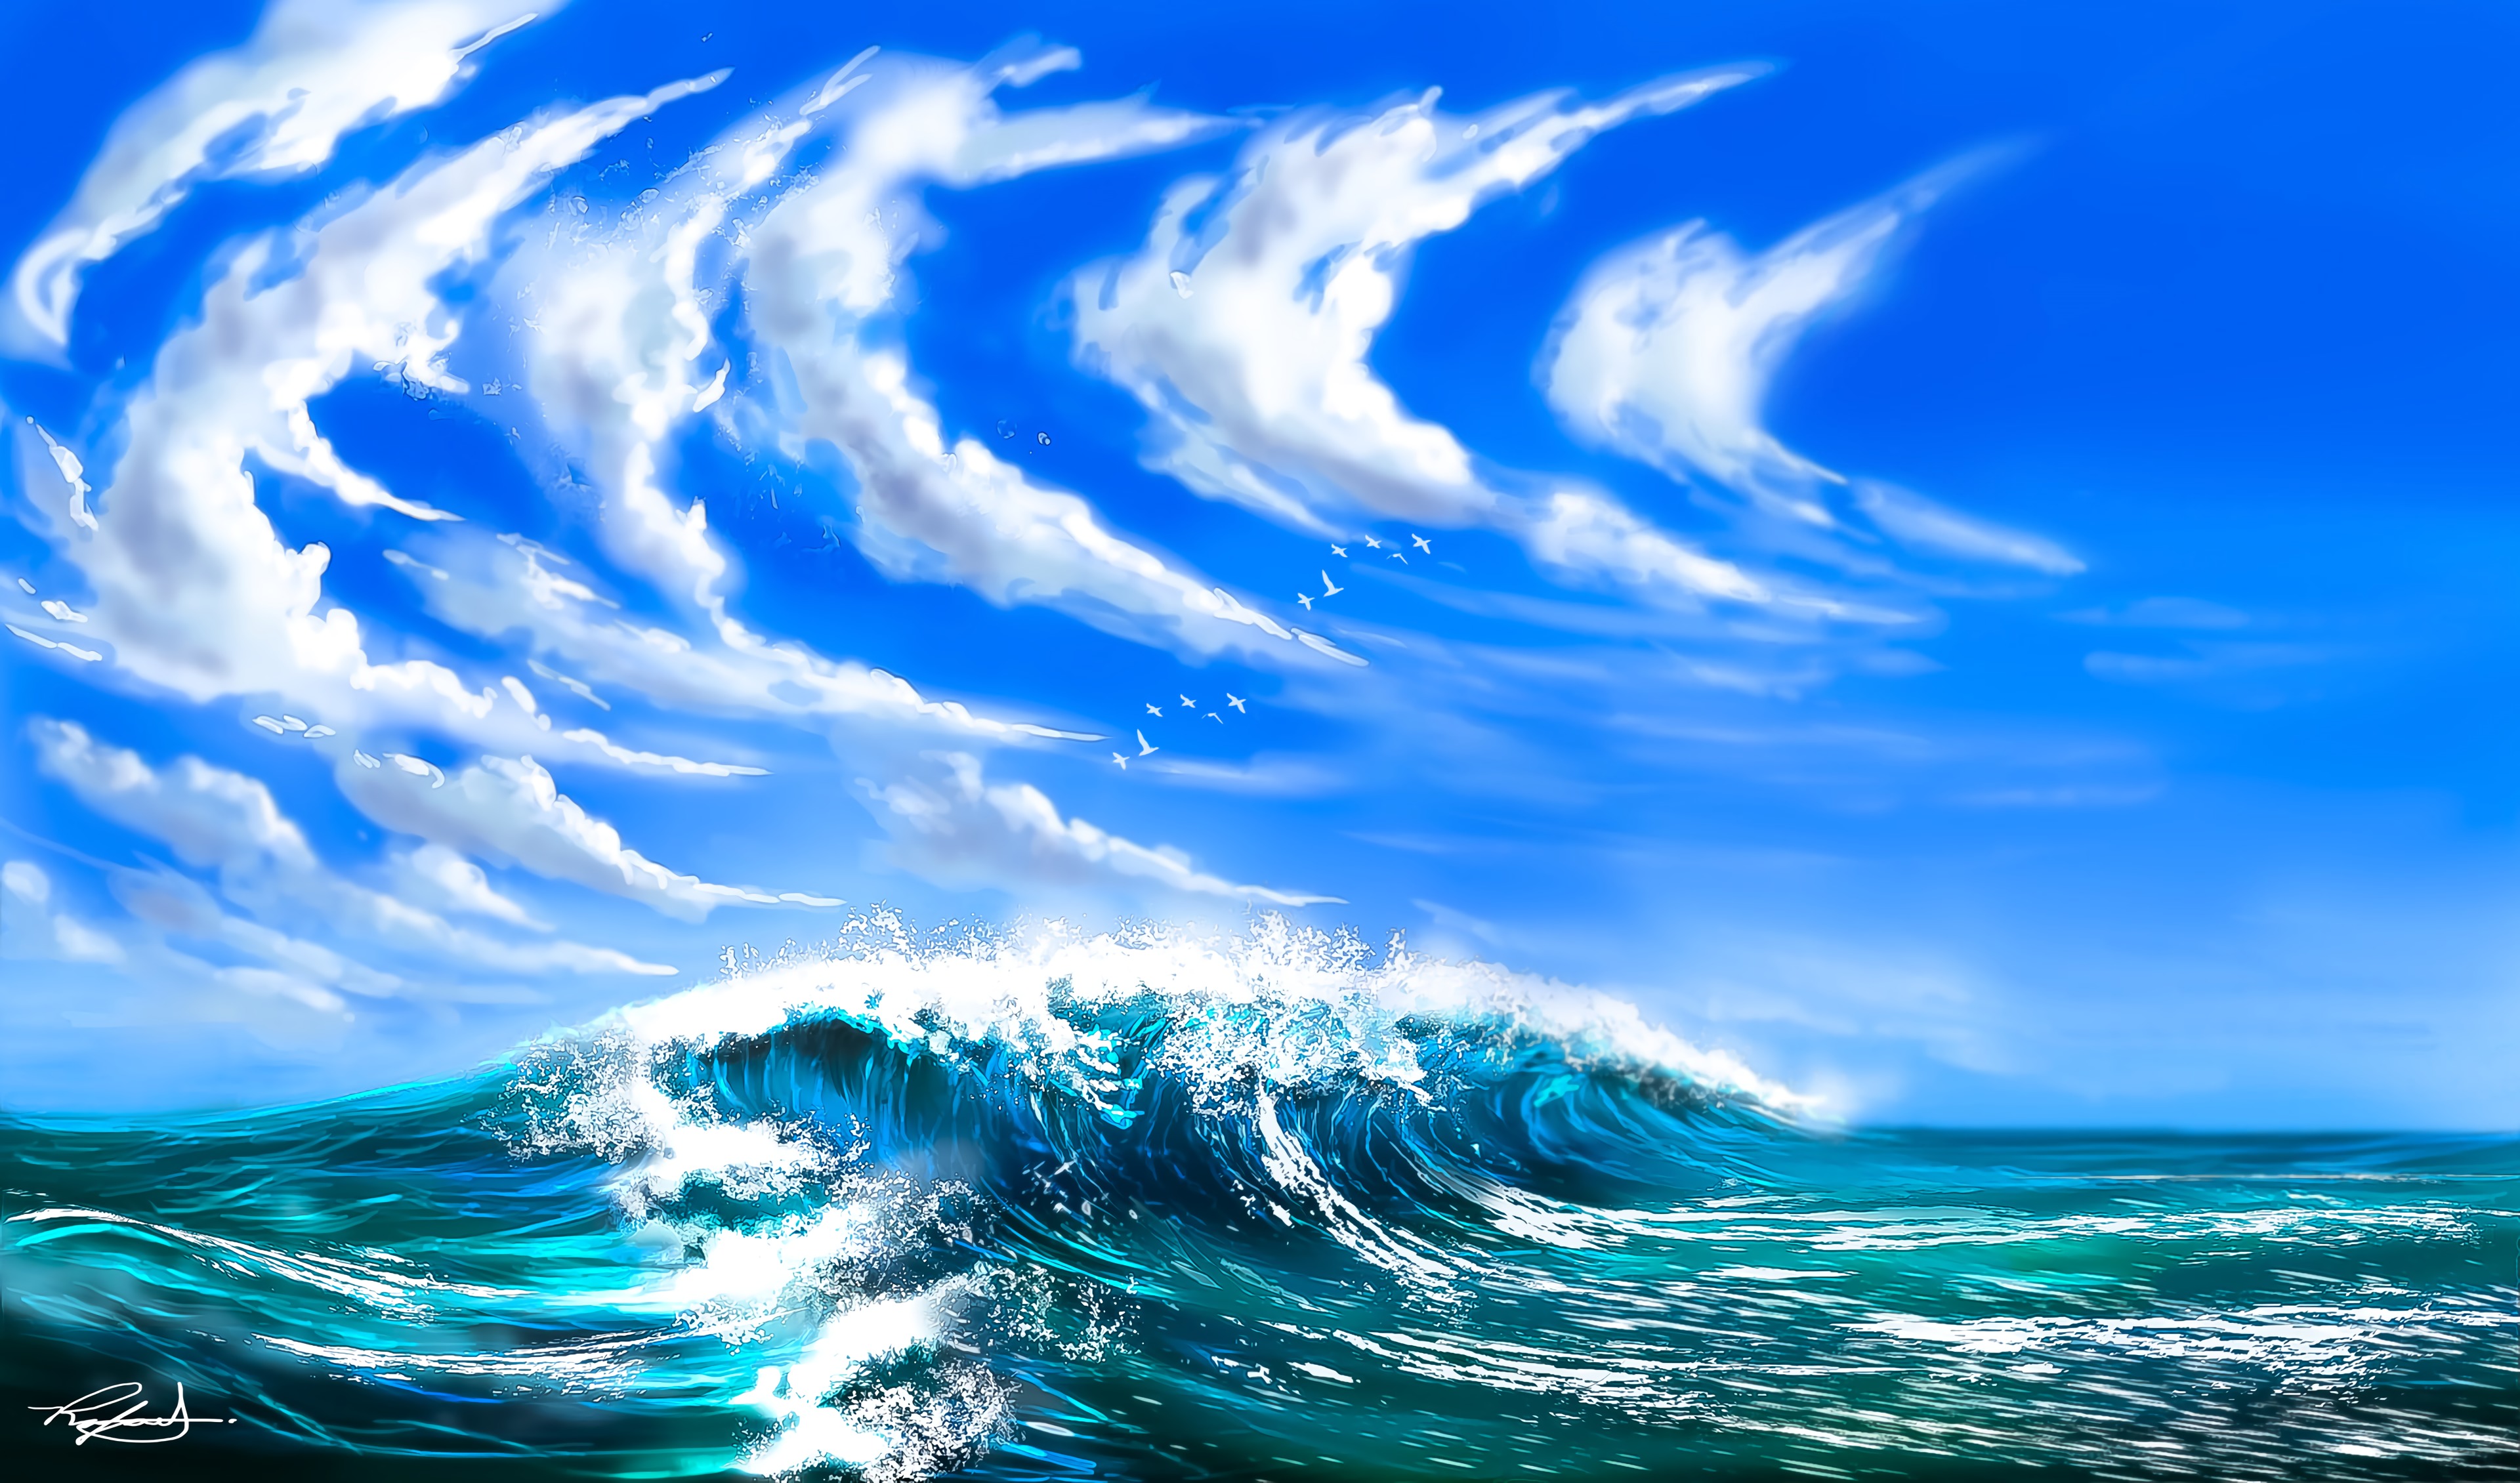 Скачать обои бесплатно Облака, Птицы, Арт, Море, Волны картинка на рабочий стол ПК